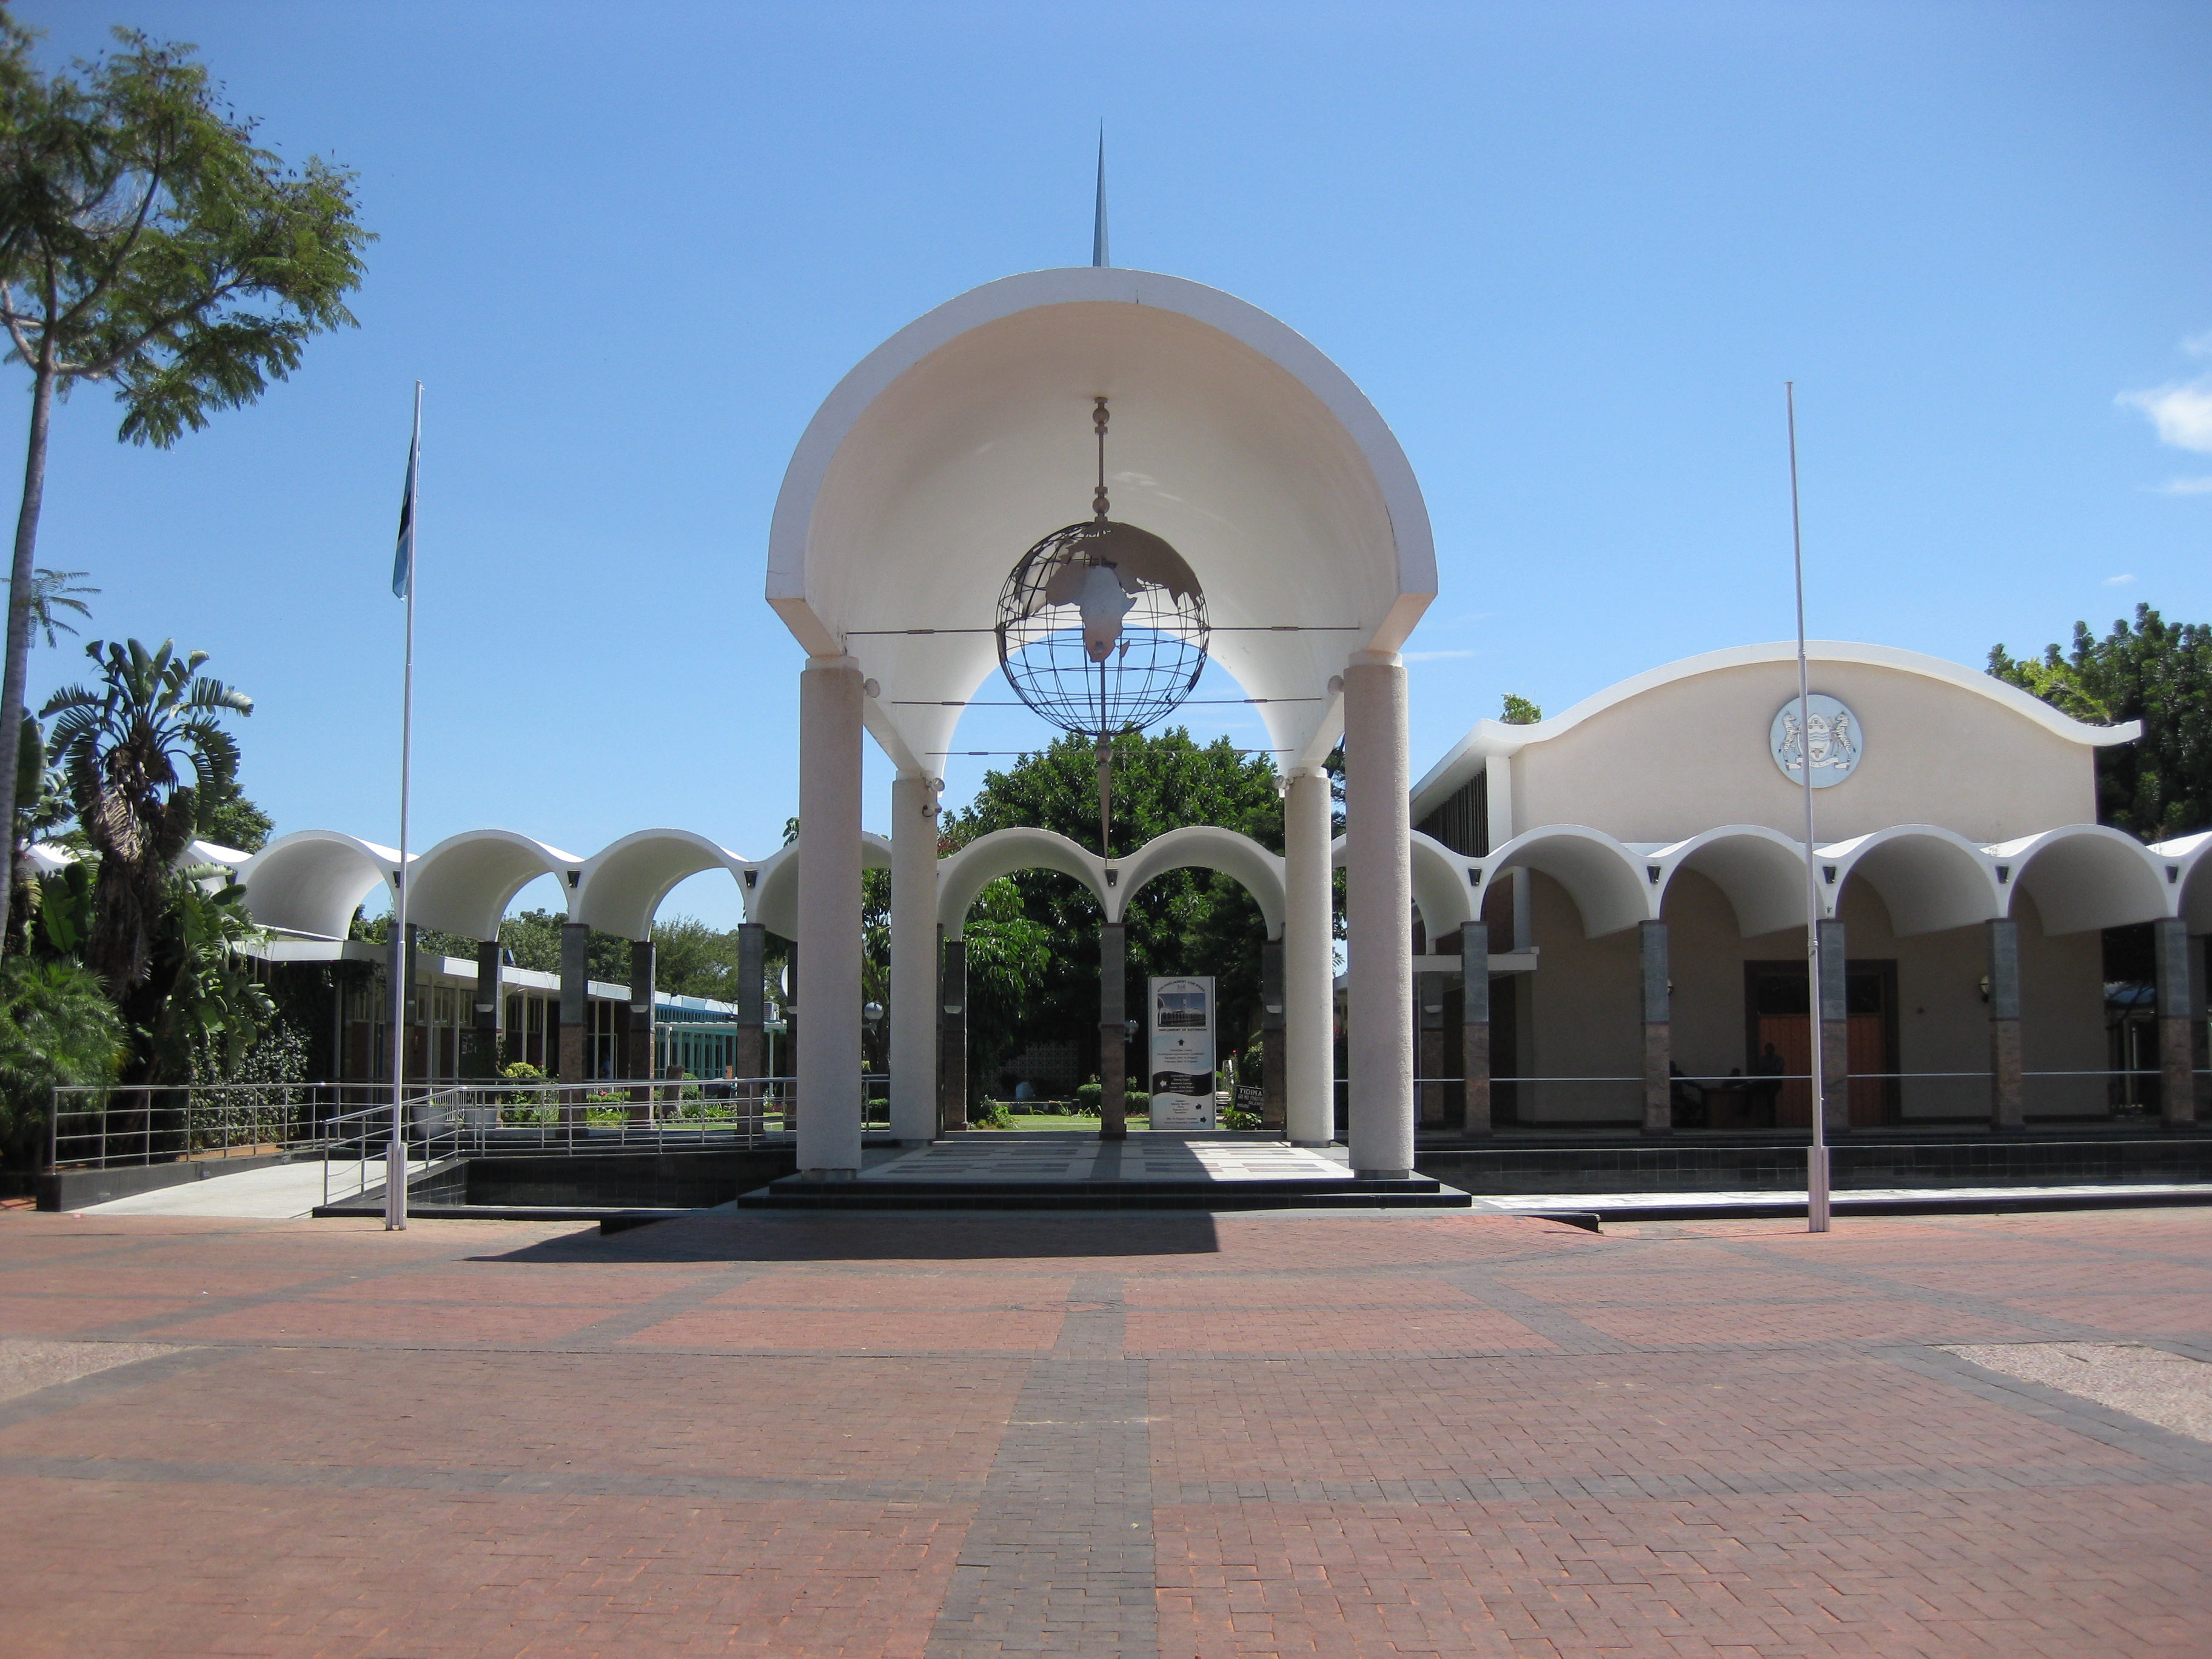 Parliament of Botswana